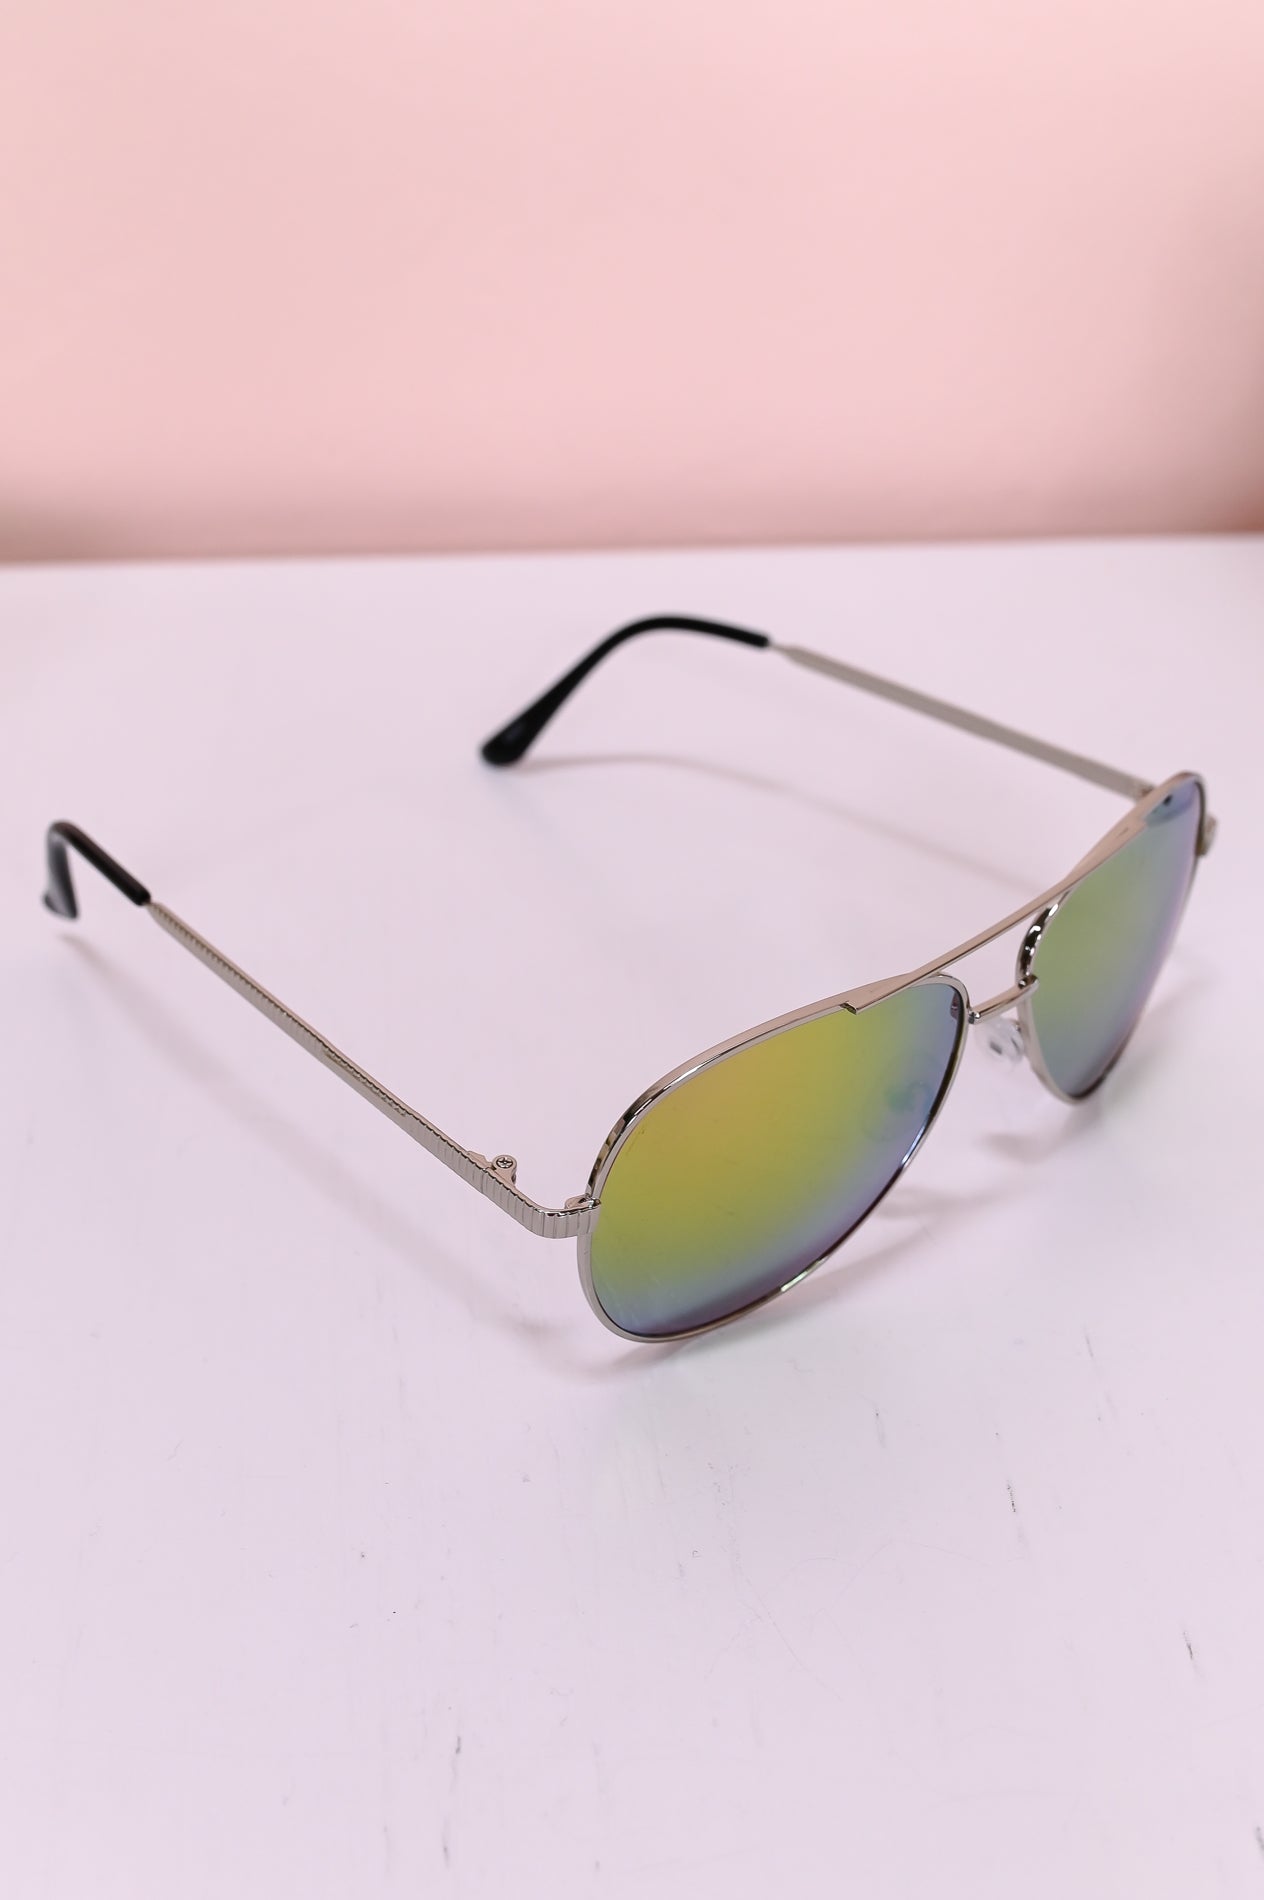 Taupe/Multi Color Aviator Sunglasses - SGL349TA